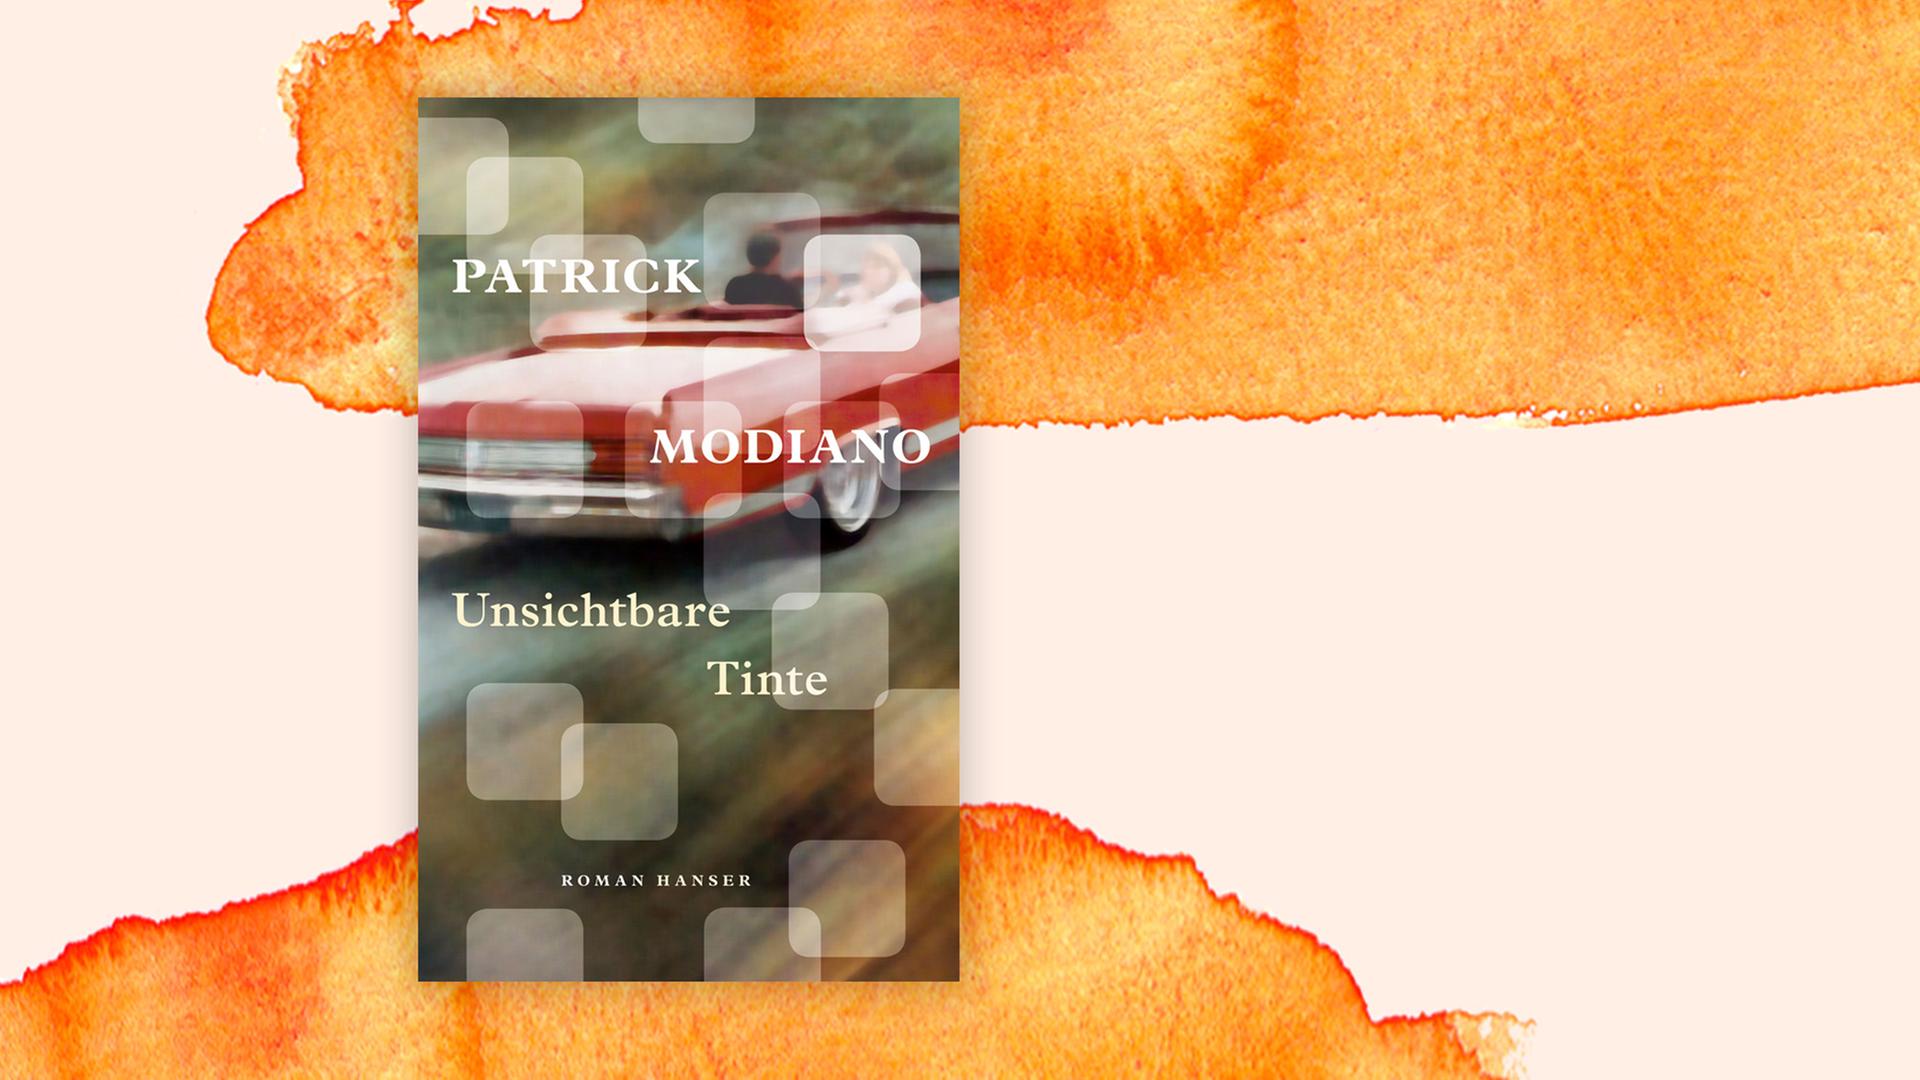 Das Buchcover "Unsichtbare Tinte" von Patrick Modiano vor einem grafischen Hintergrund